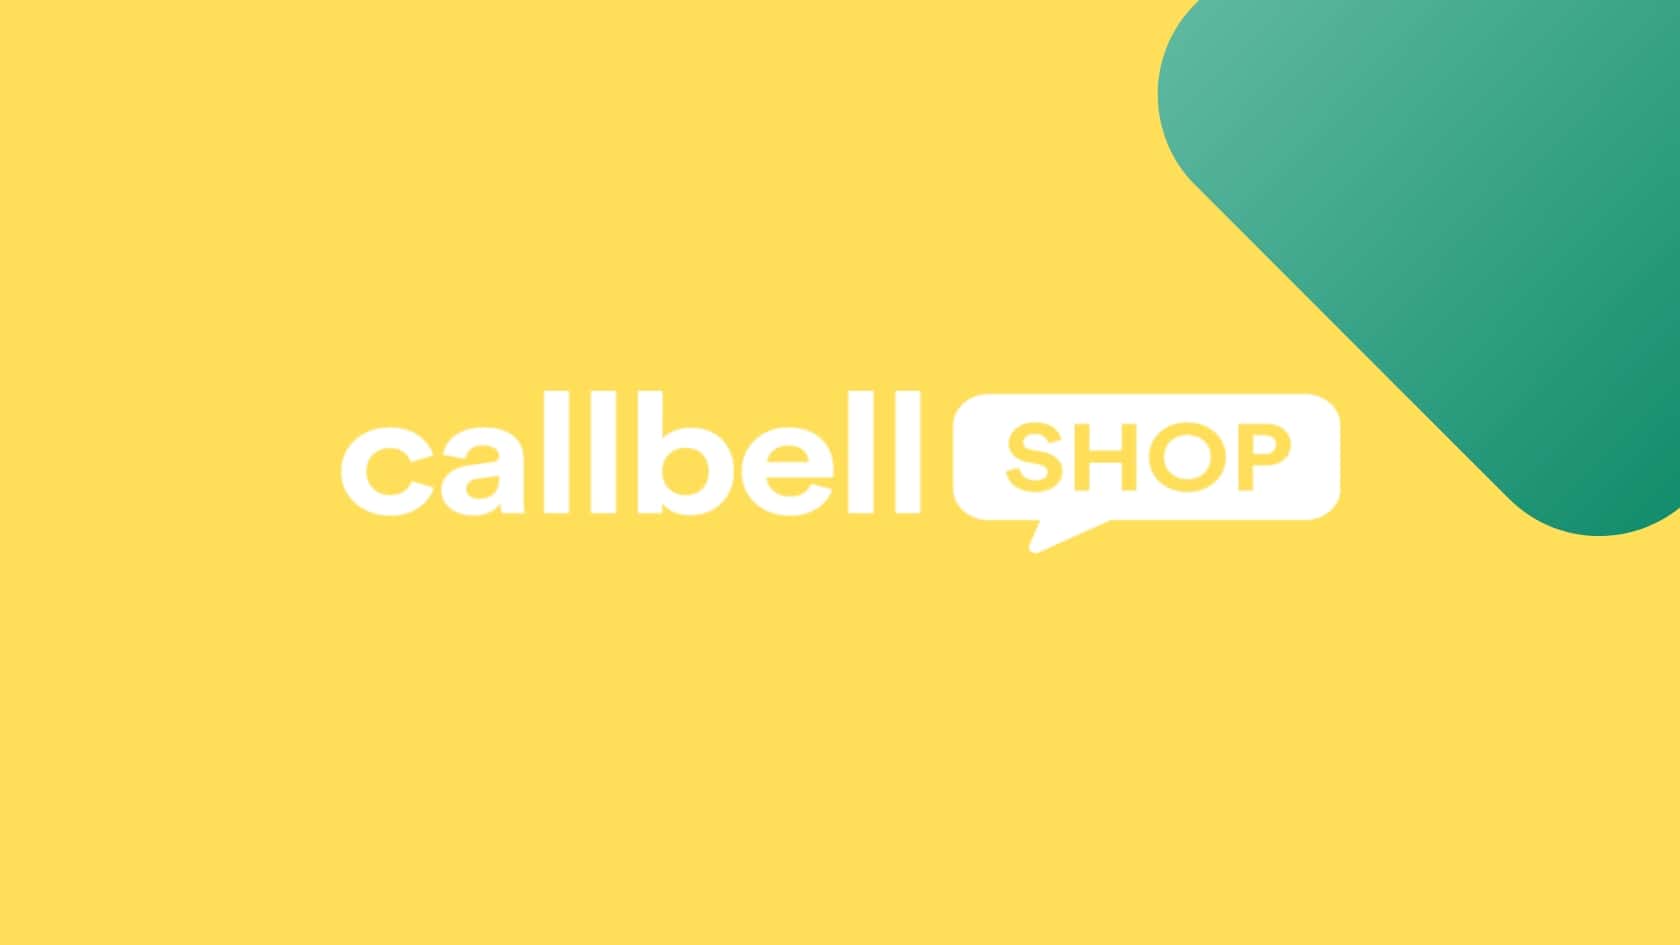 Ottimizza il processo di acquisto del tuo e-commerce tramite Callbell Shop